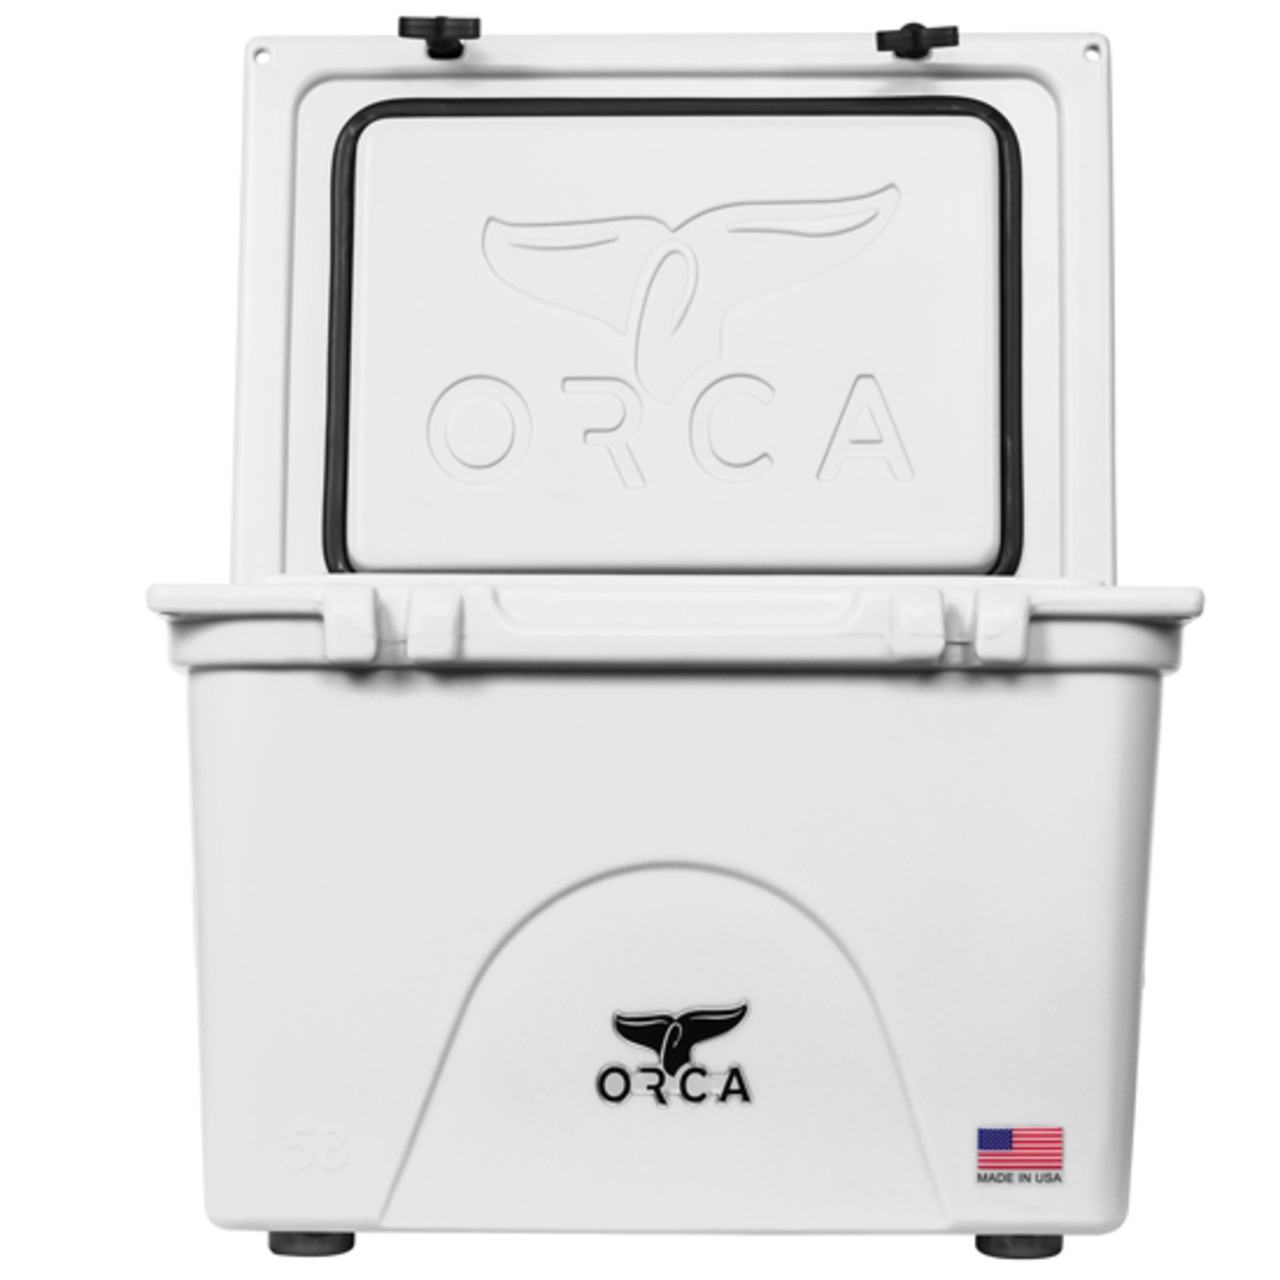 ORCA Coolers 58 Quart オルカ クーラー ボックス キャンプ用品 アウトドア キャンプ グッズ 保冷 クッキング ドリンク オルカクーラーズジャパン